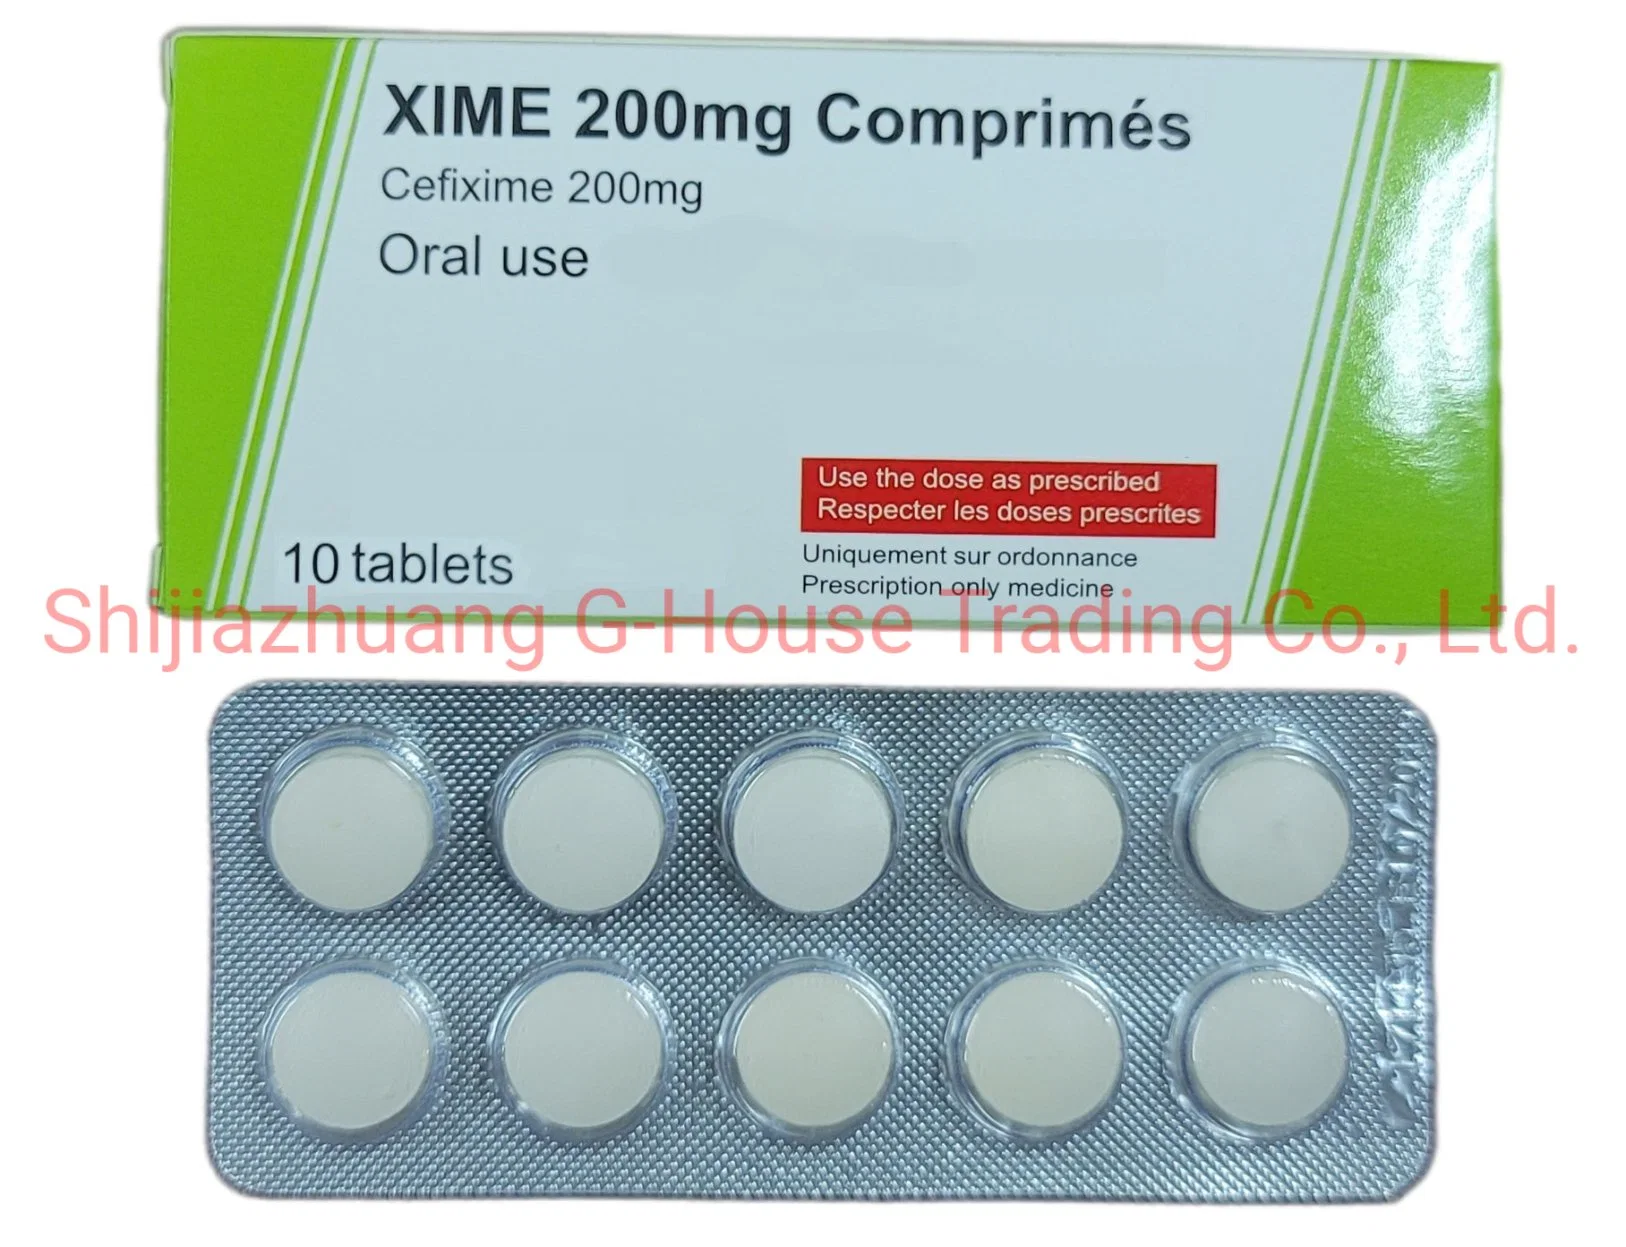 Cefixime Tablets 200mg Western Finished Medicine Pharmaceuticals Drug